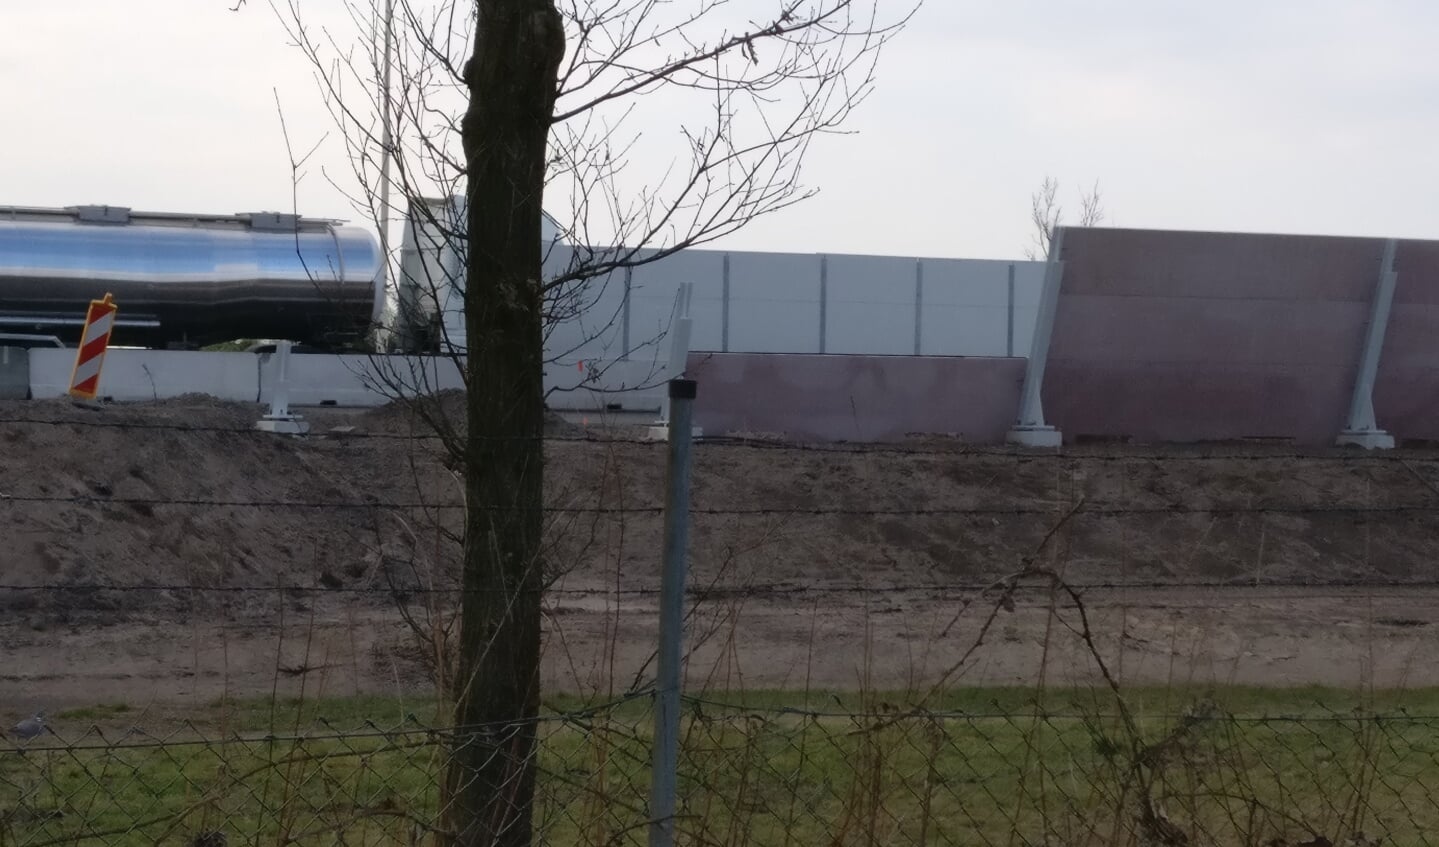 Op deze foto van 23 maart, genomen op de sportvelden van SVM, zijn van oost naar west de laatste werkzaamheden zichtbaar aan het nieuwe geluidscherm en daarvoor het tijdelijke geluidsscherm, geplaatst op een betonnen barrier.